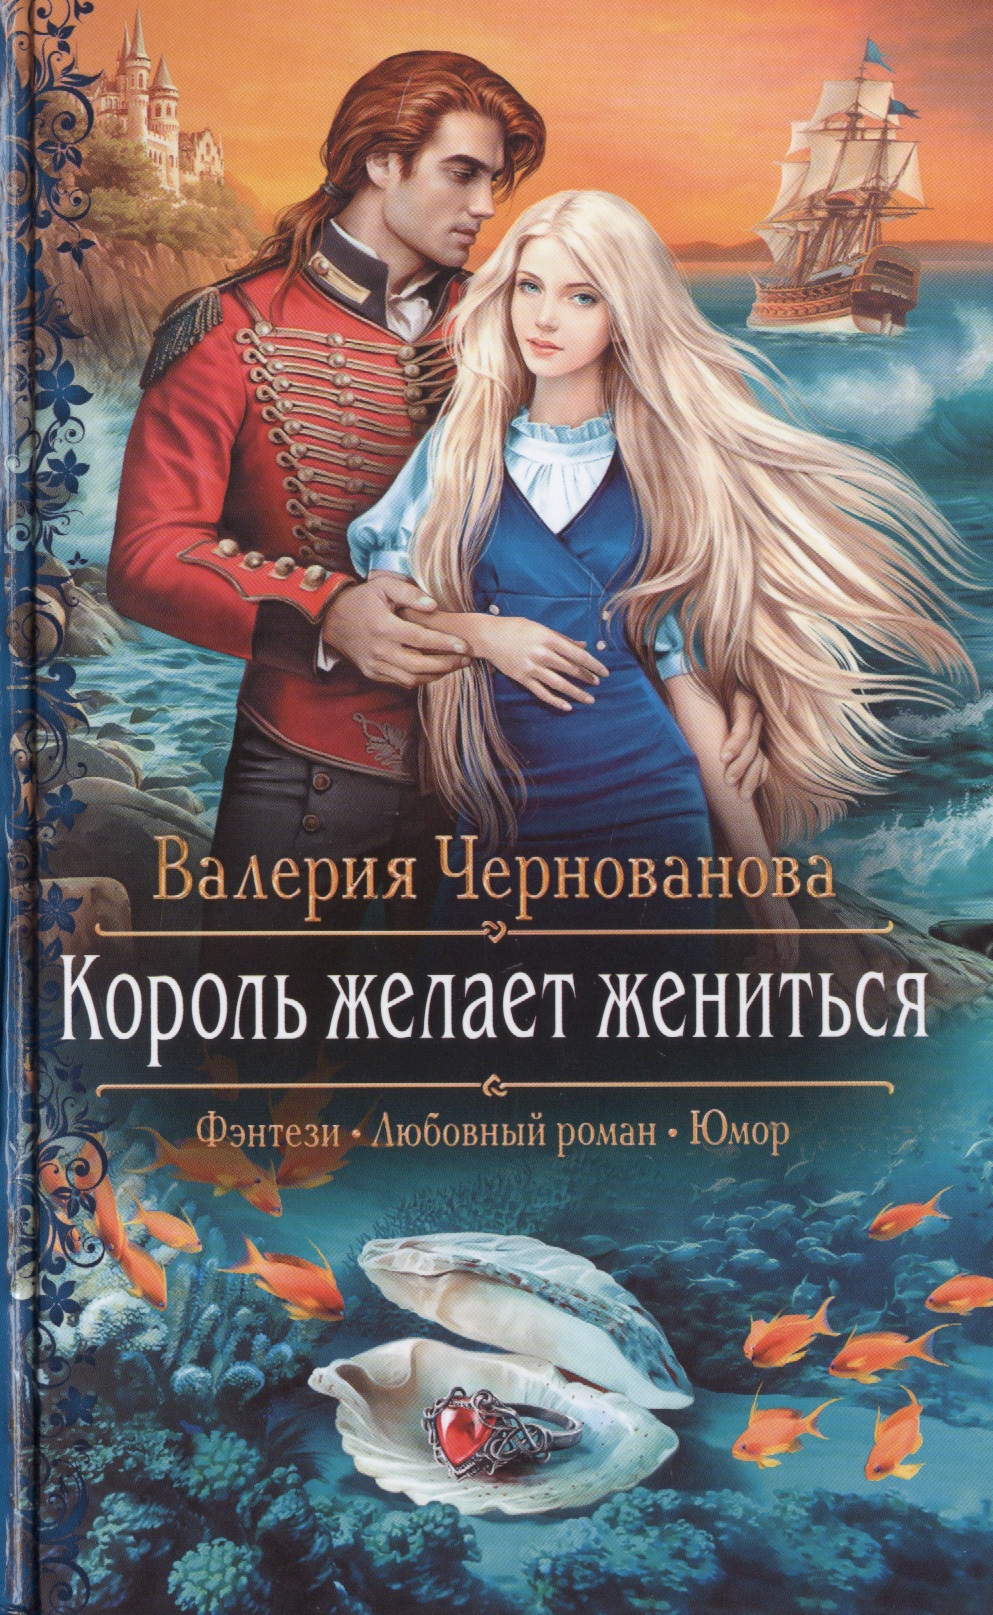 Читать книги фэнтези новинки. Король желает жениться Чернованова. Обложки книг фэнтези. Любовное фэнтези.